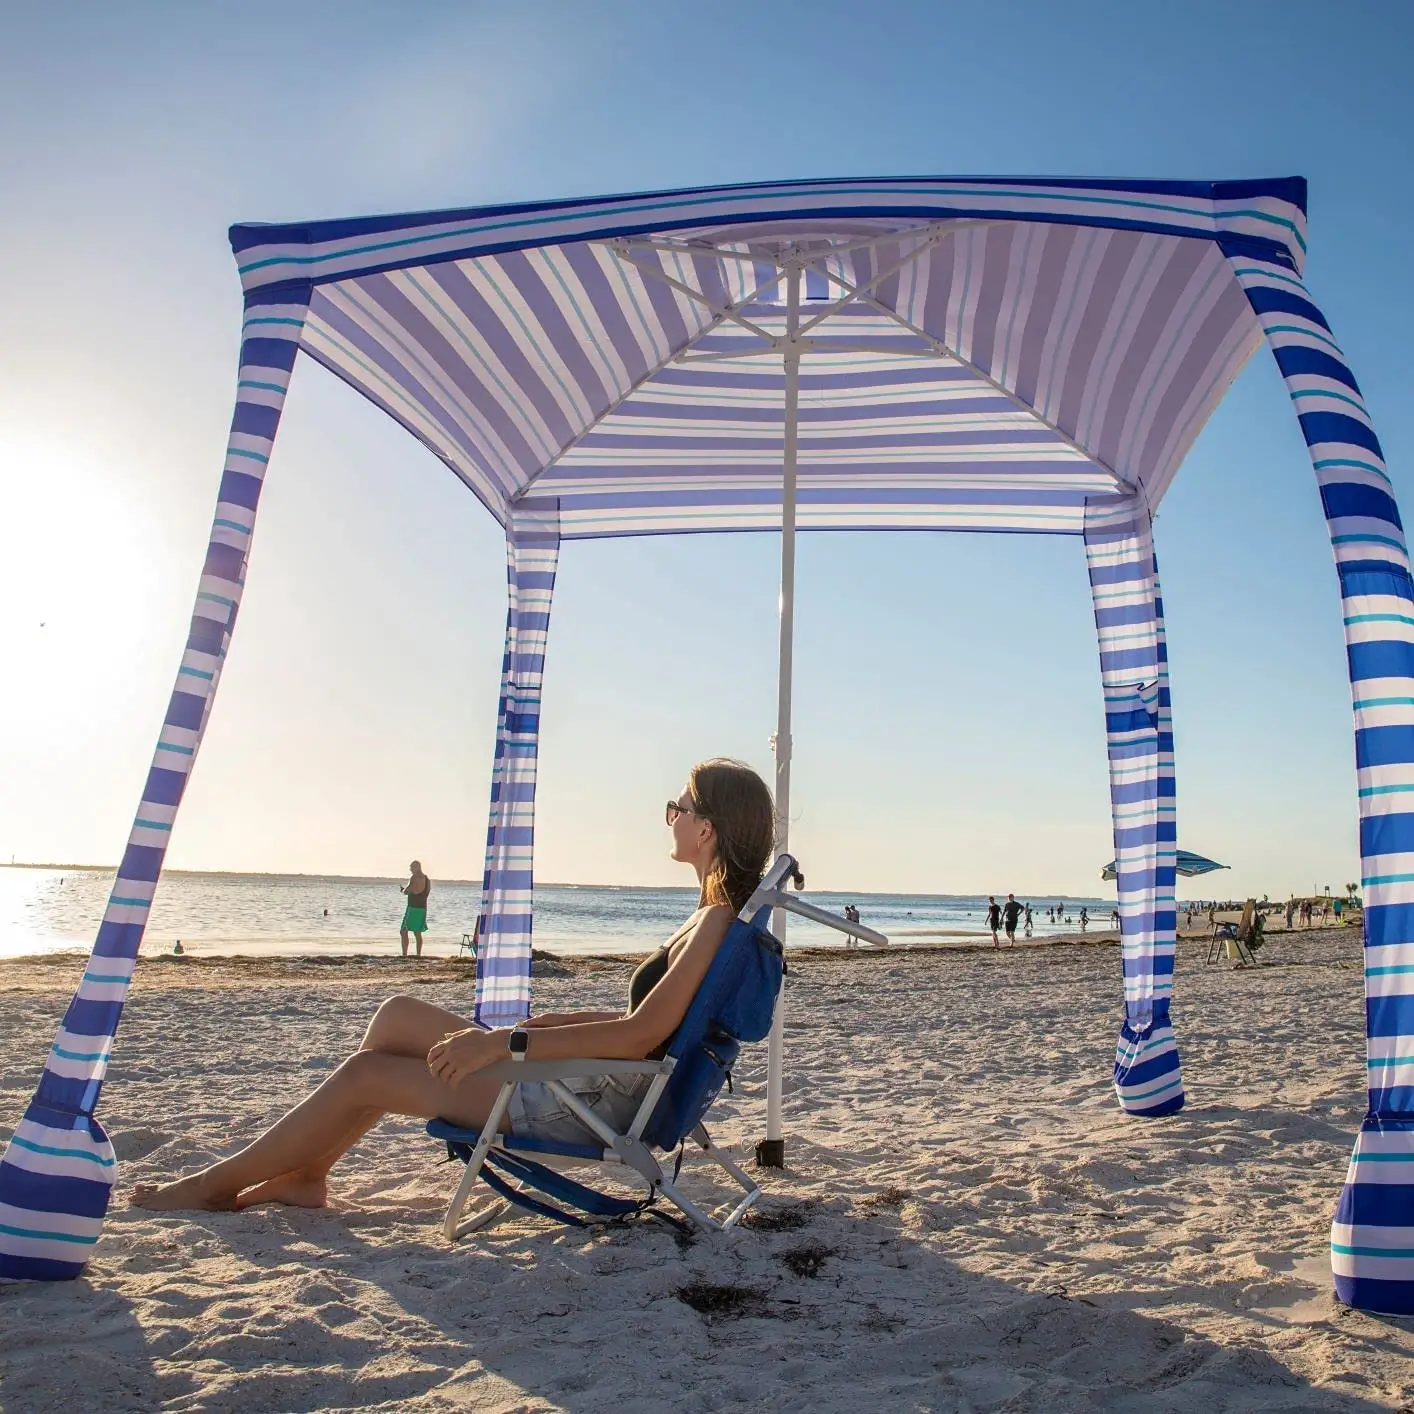 Özel baskı 4 bacaklar 6ft açık taşınabilir plaj Cabana çadır rüzgar geçirmez kare güneş barınak Cabana plaj şemsiye